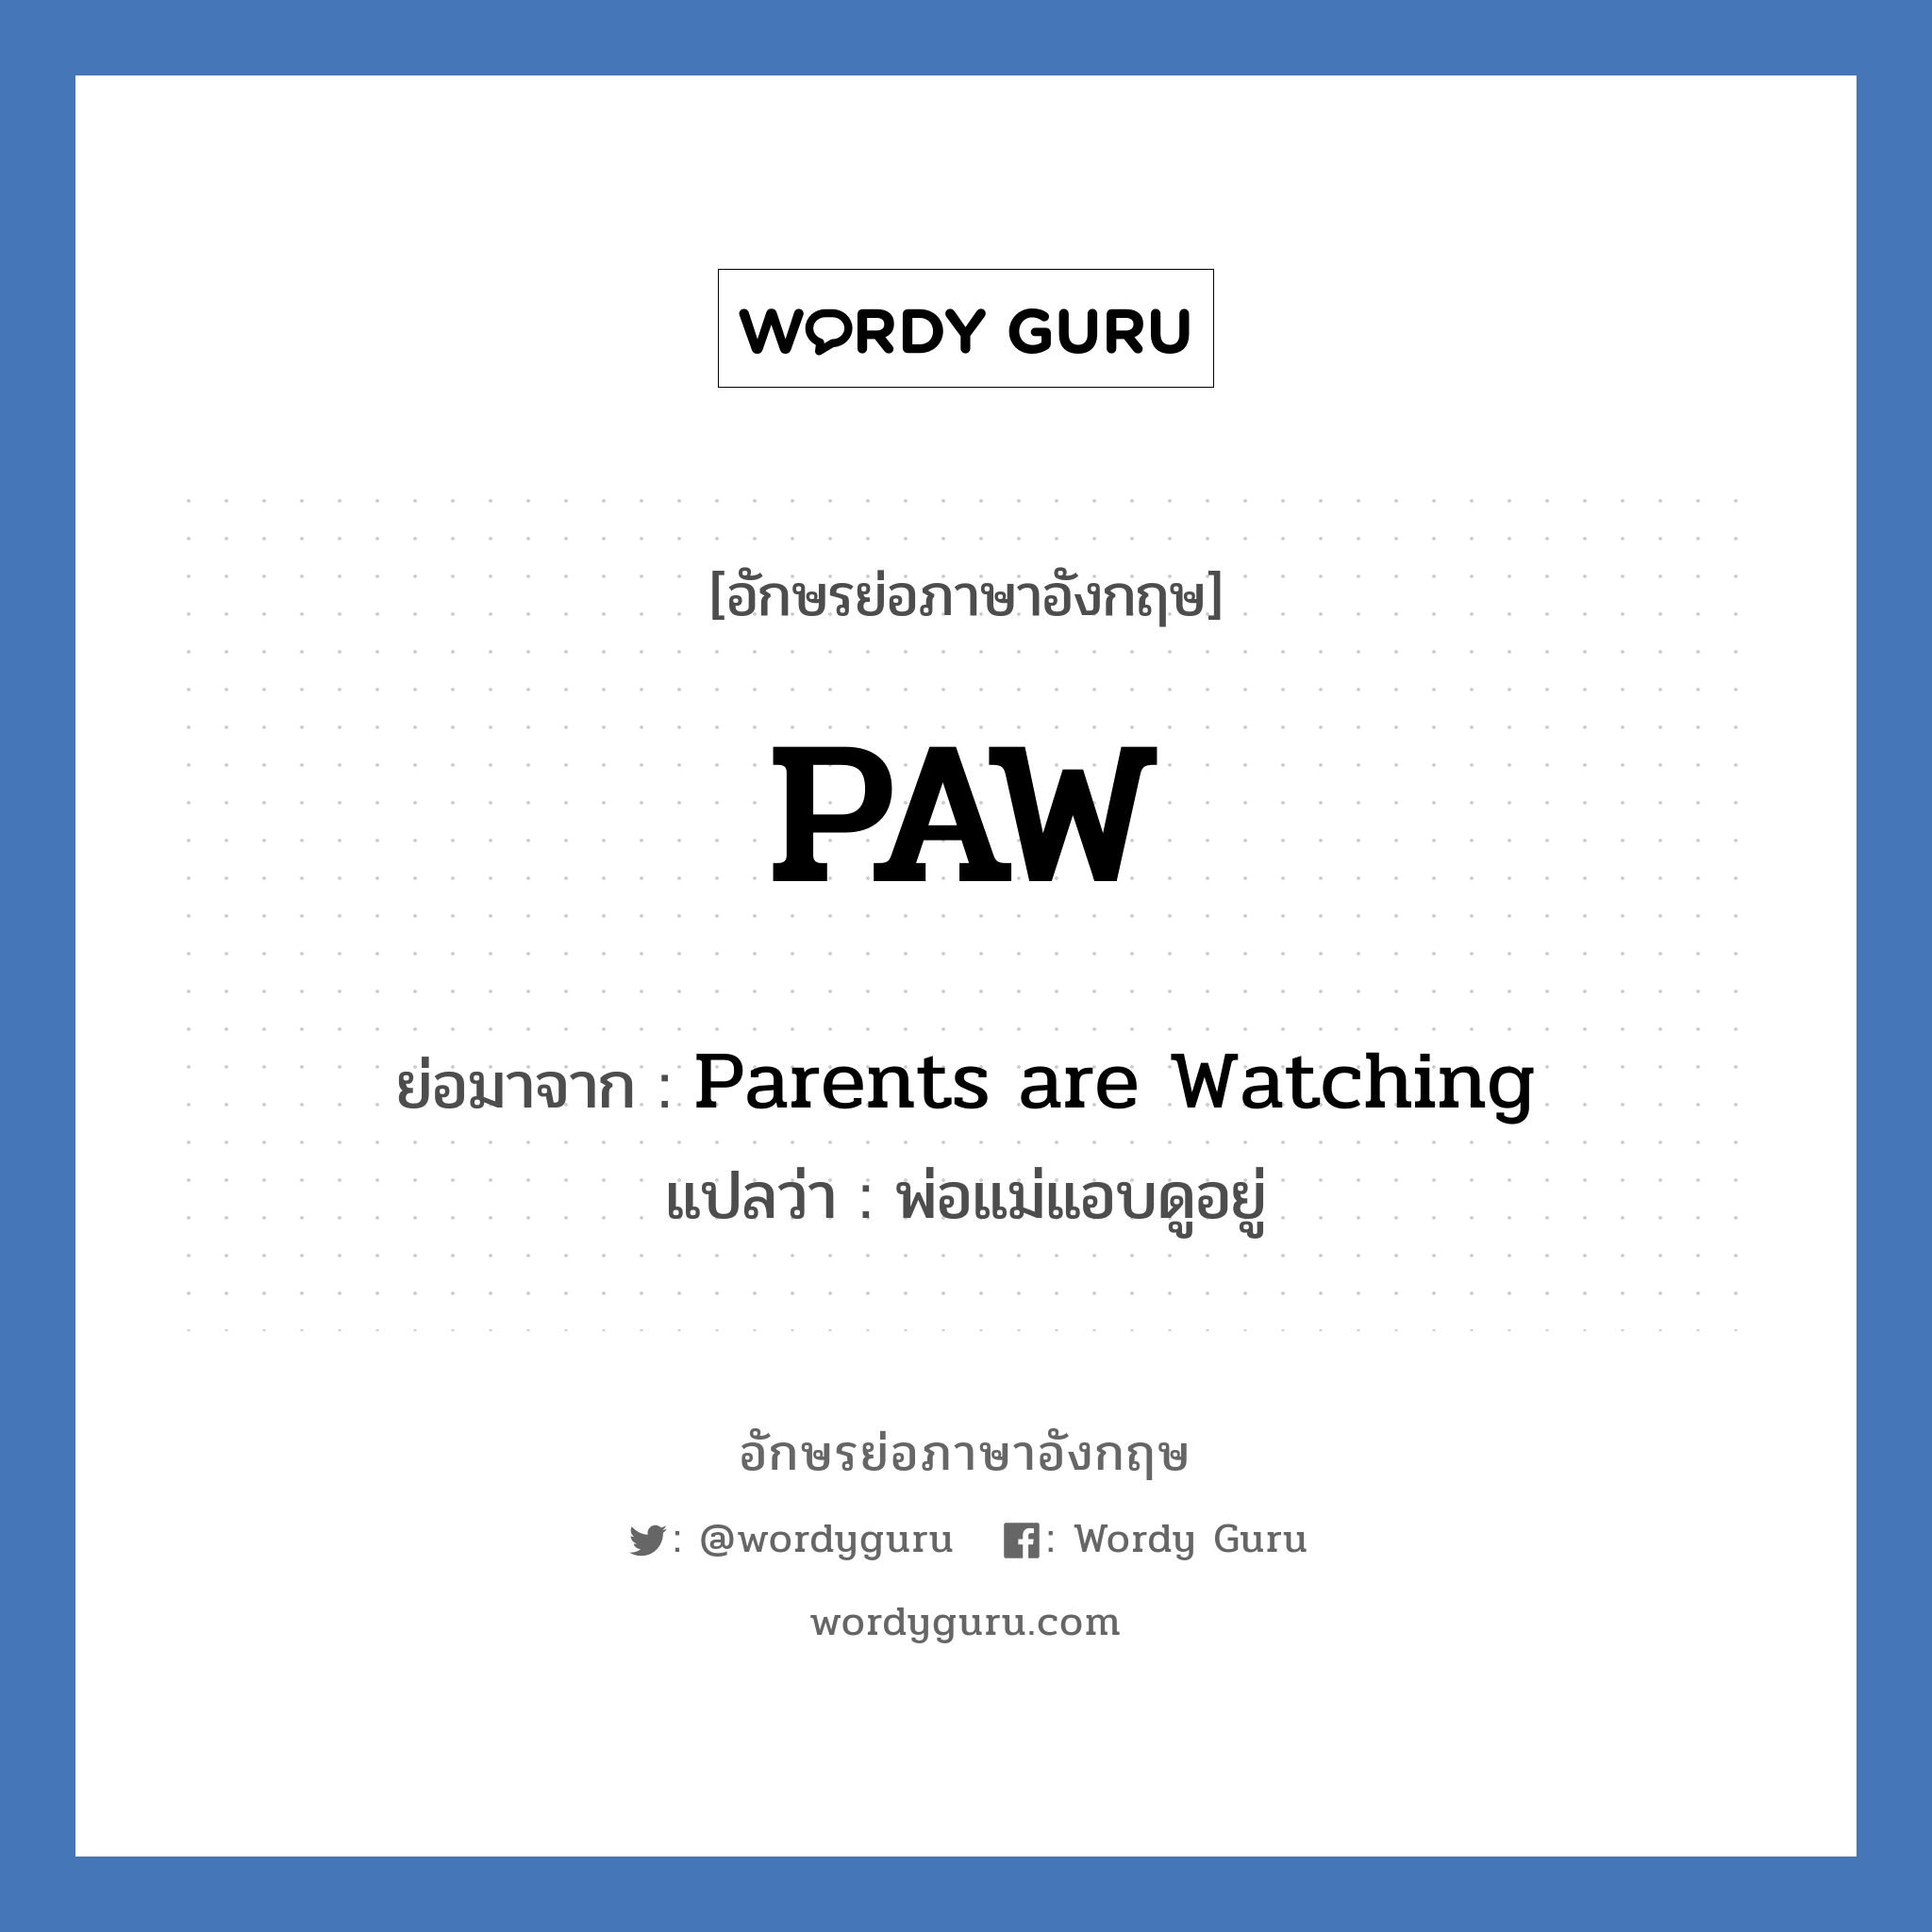 PAW ย่อมาจาก? แปลว่า?, อักษรย่อภาษาอังกฤษ PAW ย่อมาจาก Parents are Watching แปลว่า พ่อแม่แอบดูอยู่